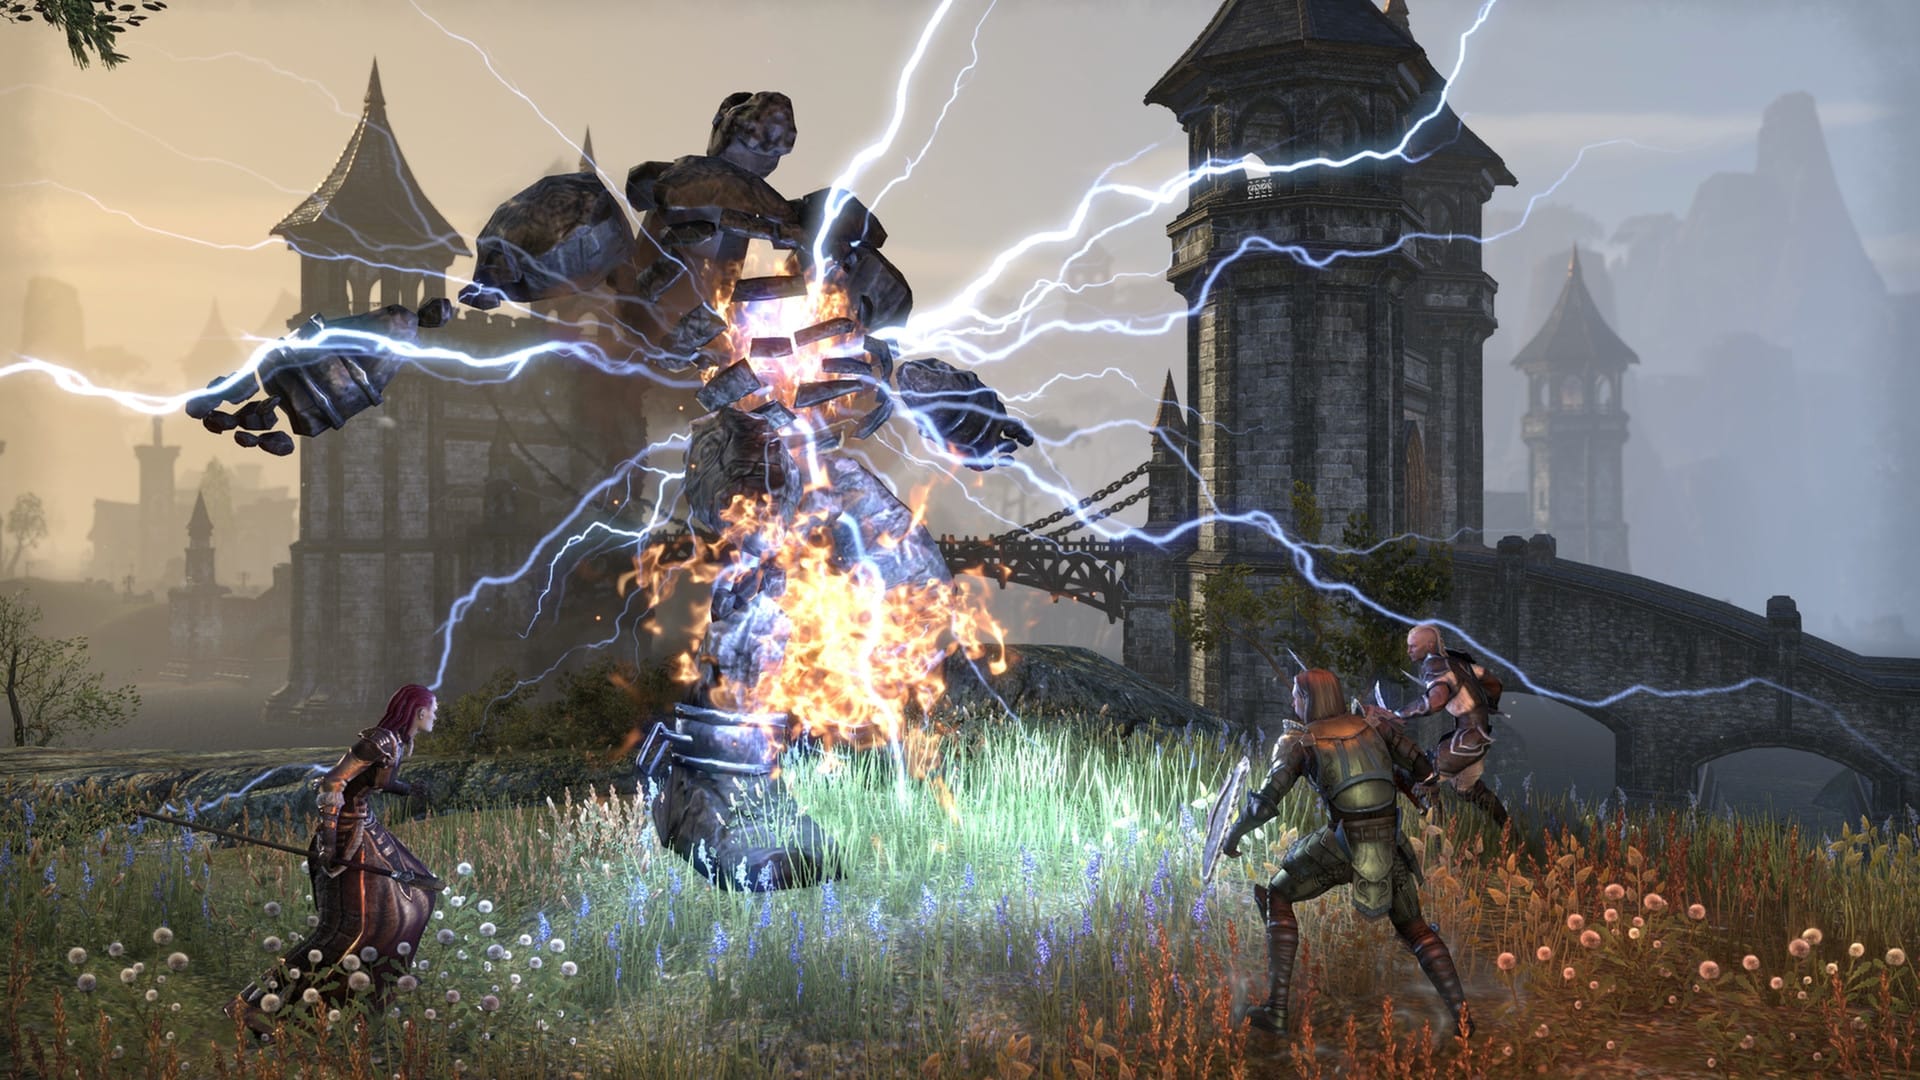 Bästa MMORPG -spel: The Elder Scrolls Online. Bilden visar ett parti med tre karaktärer som kommer upp mot en stor sten varelse med el som kommer ut ur den